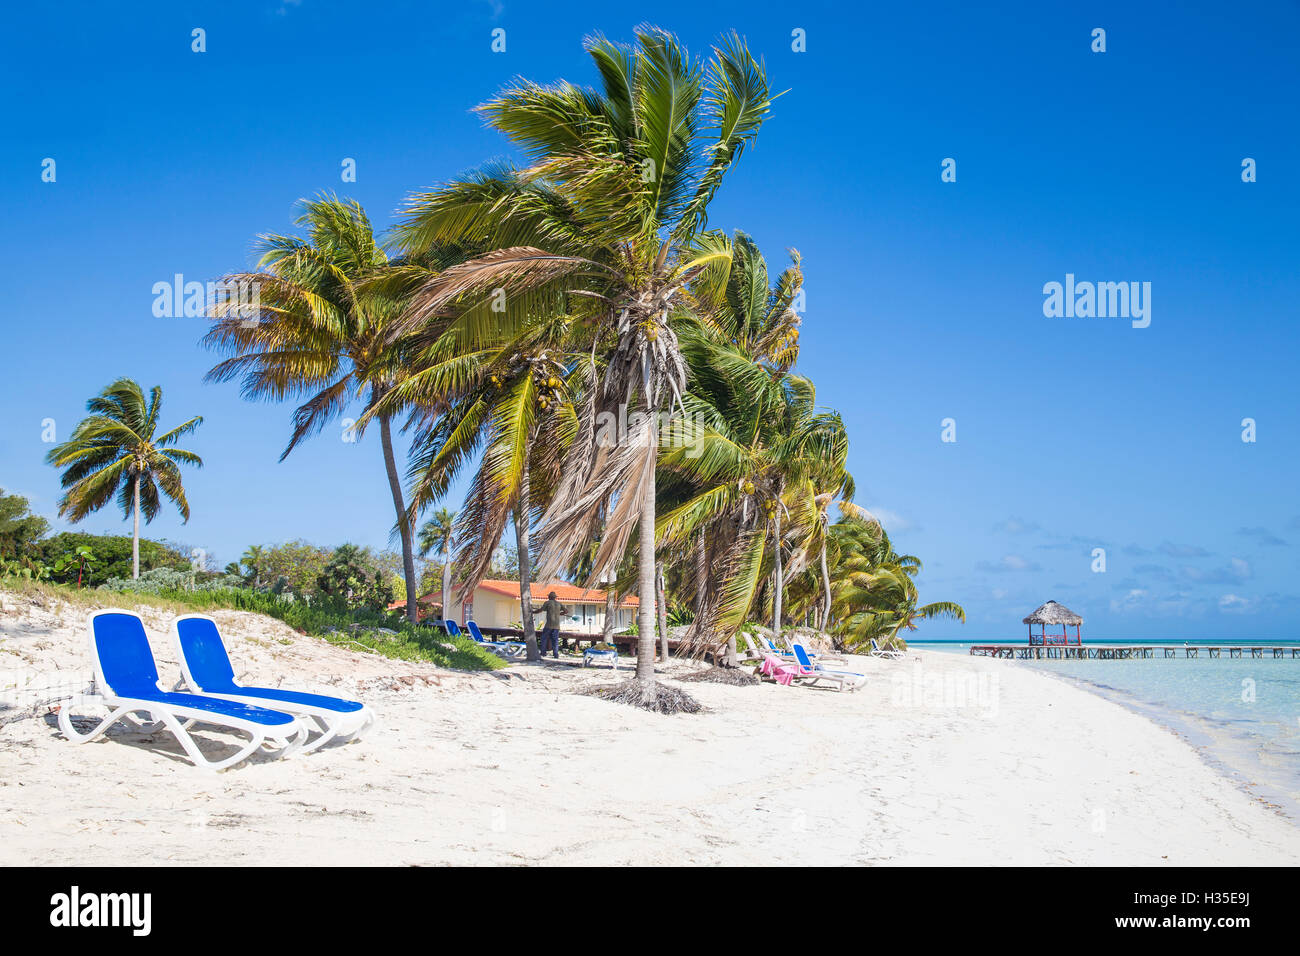 Palmiers et la plage, Playa El Paso, Cayo Guillermo, Jardines del Rey, province de Ciego de Avila, Cuba, Antilles, Caraïbes Banque D'Images